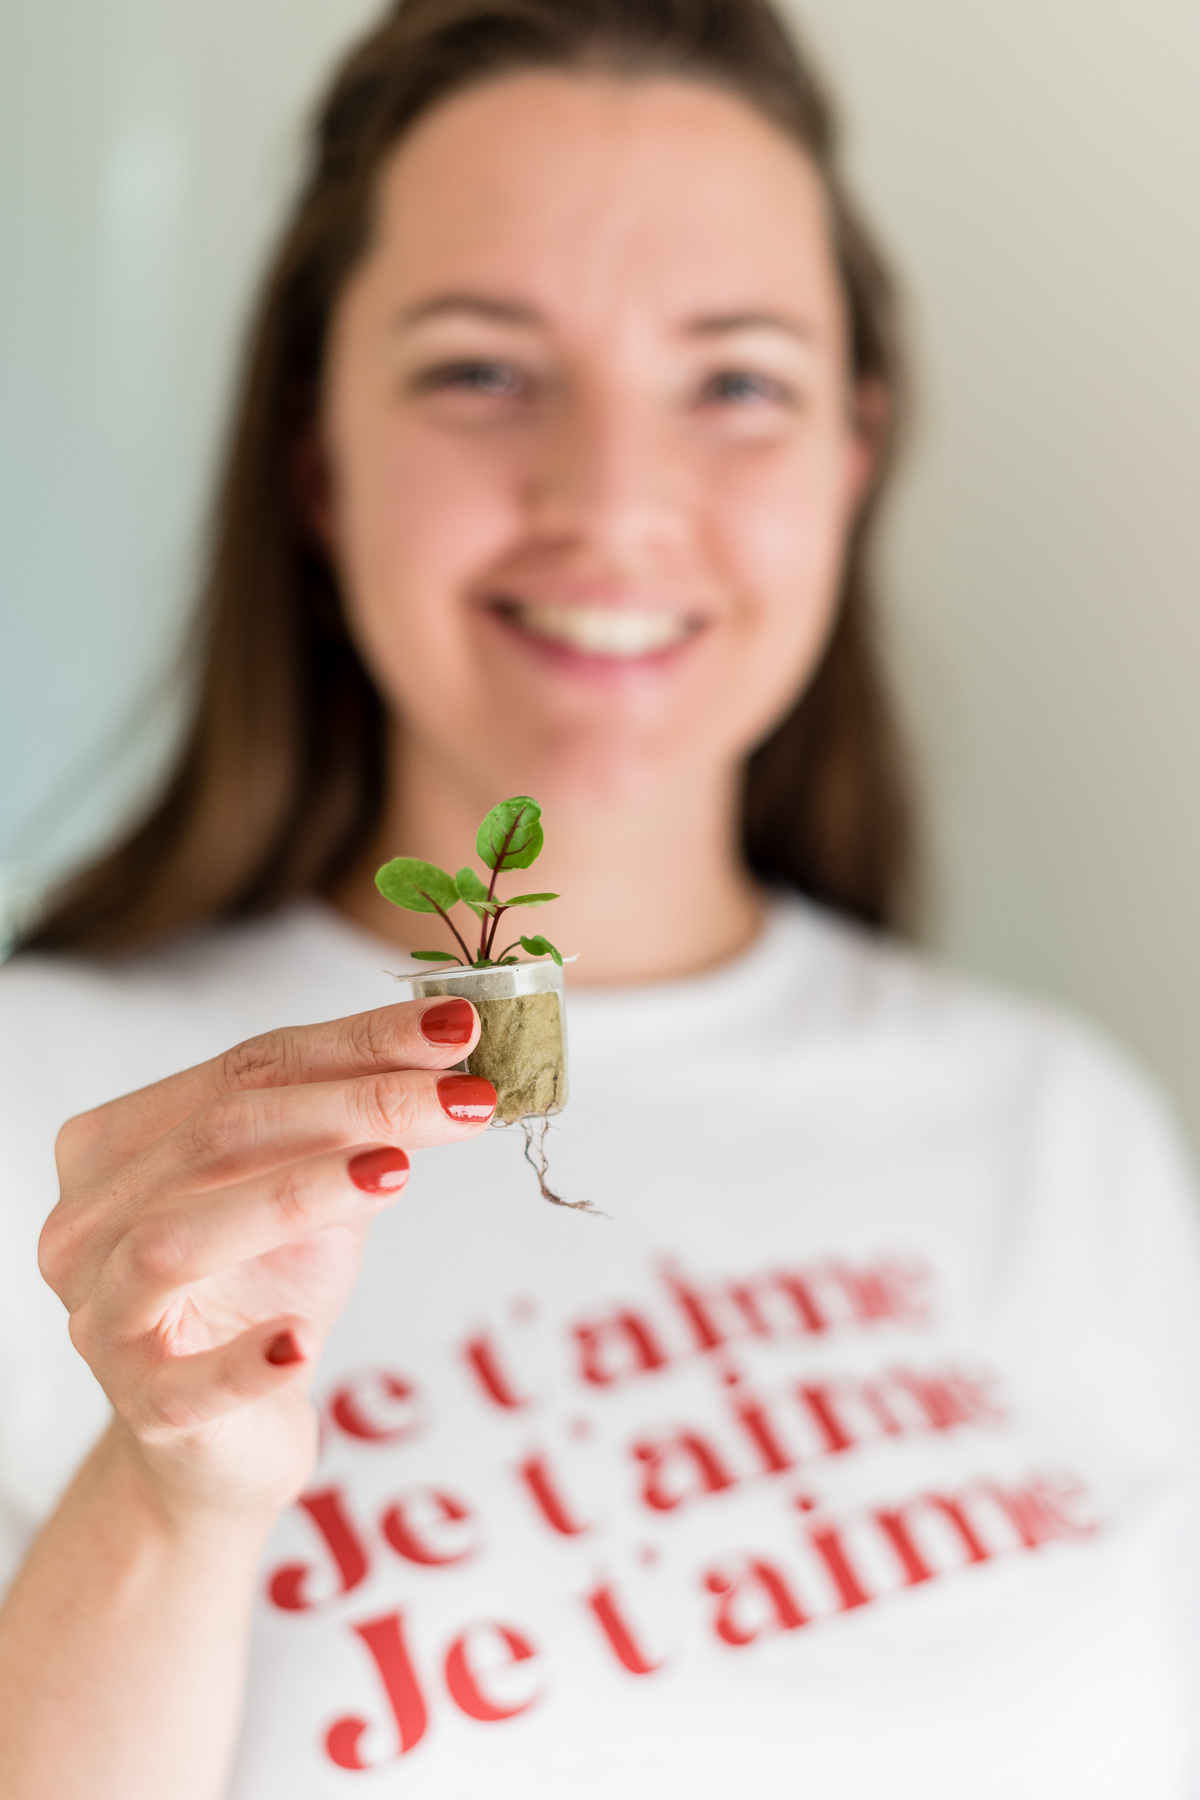 Lächelnde Frau mit kleiner Pflanze in der Hand